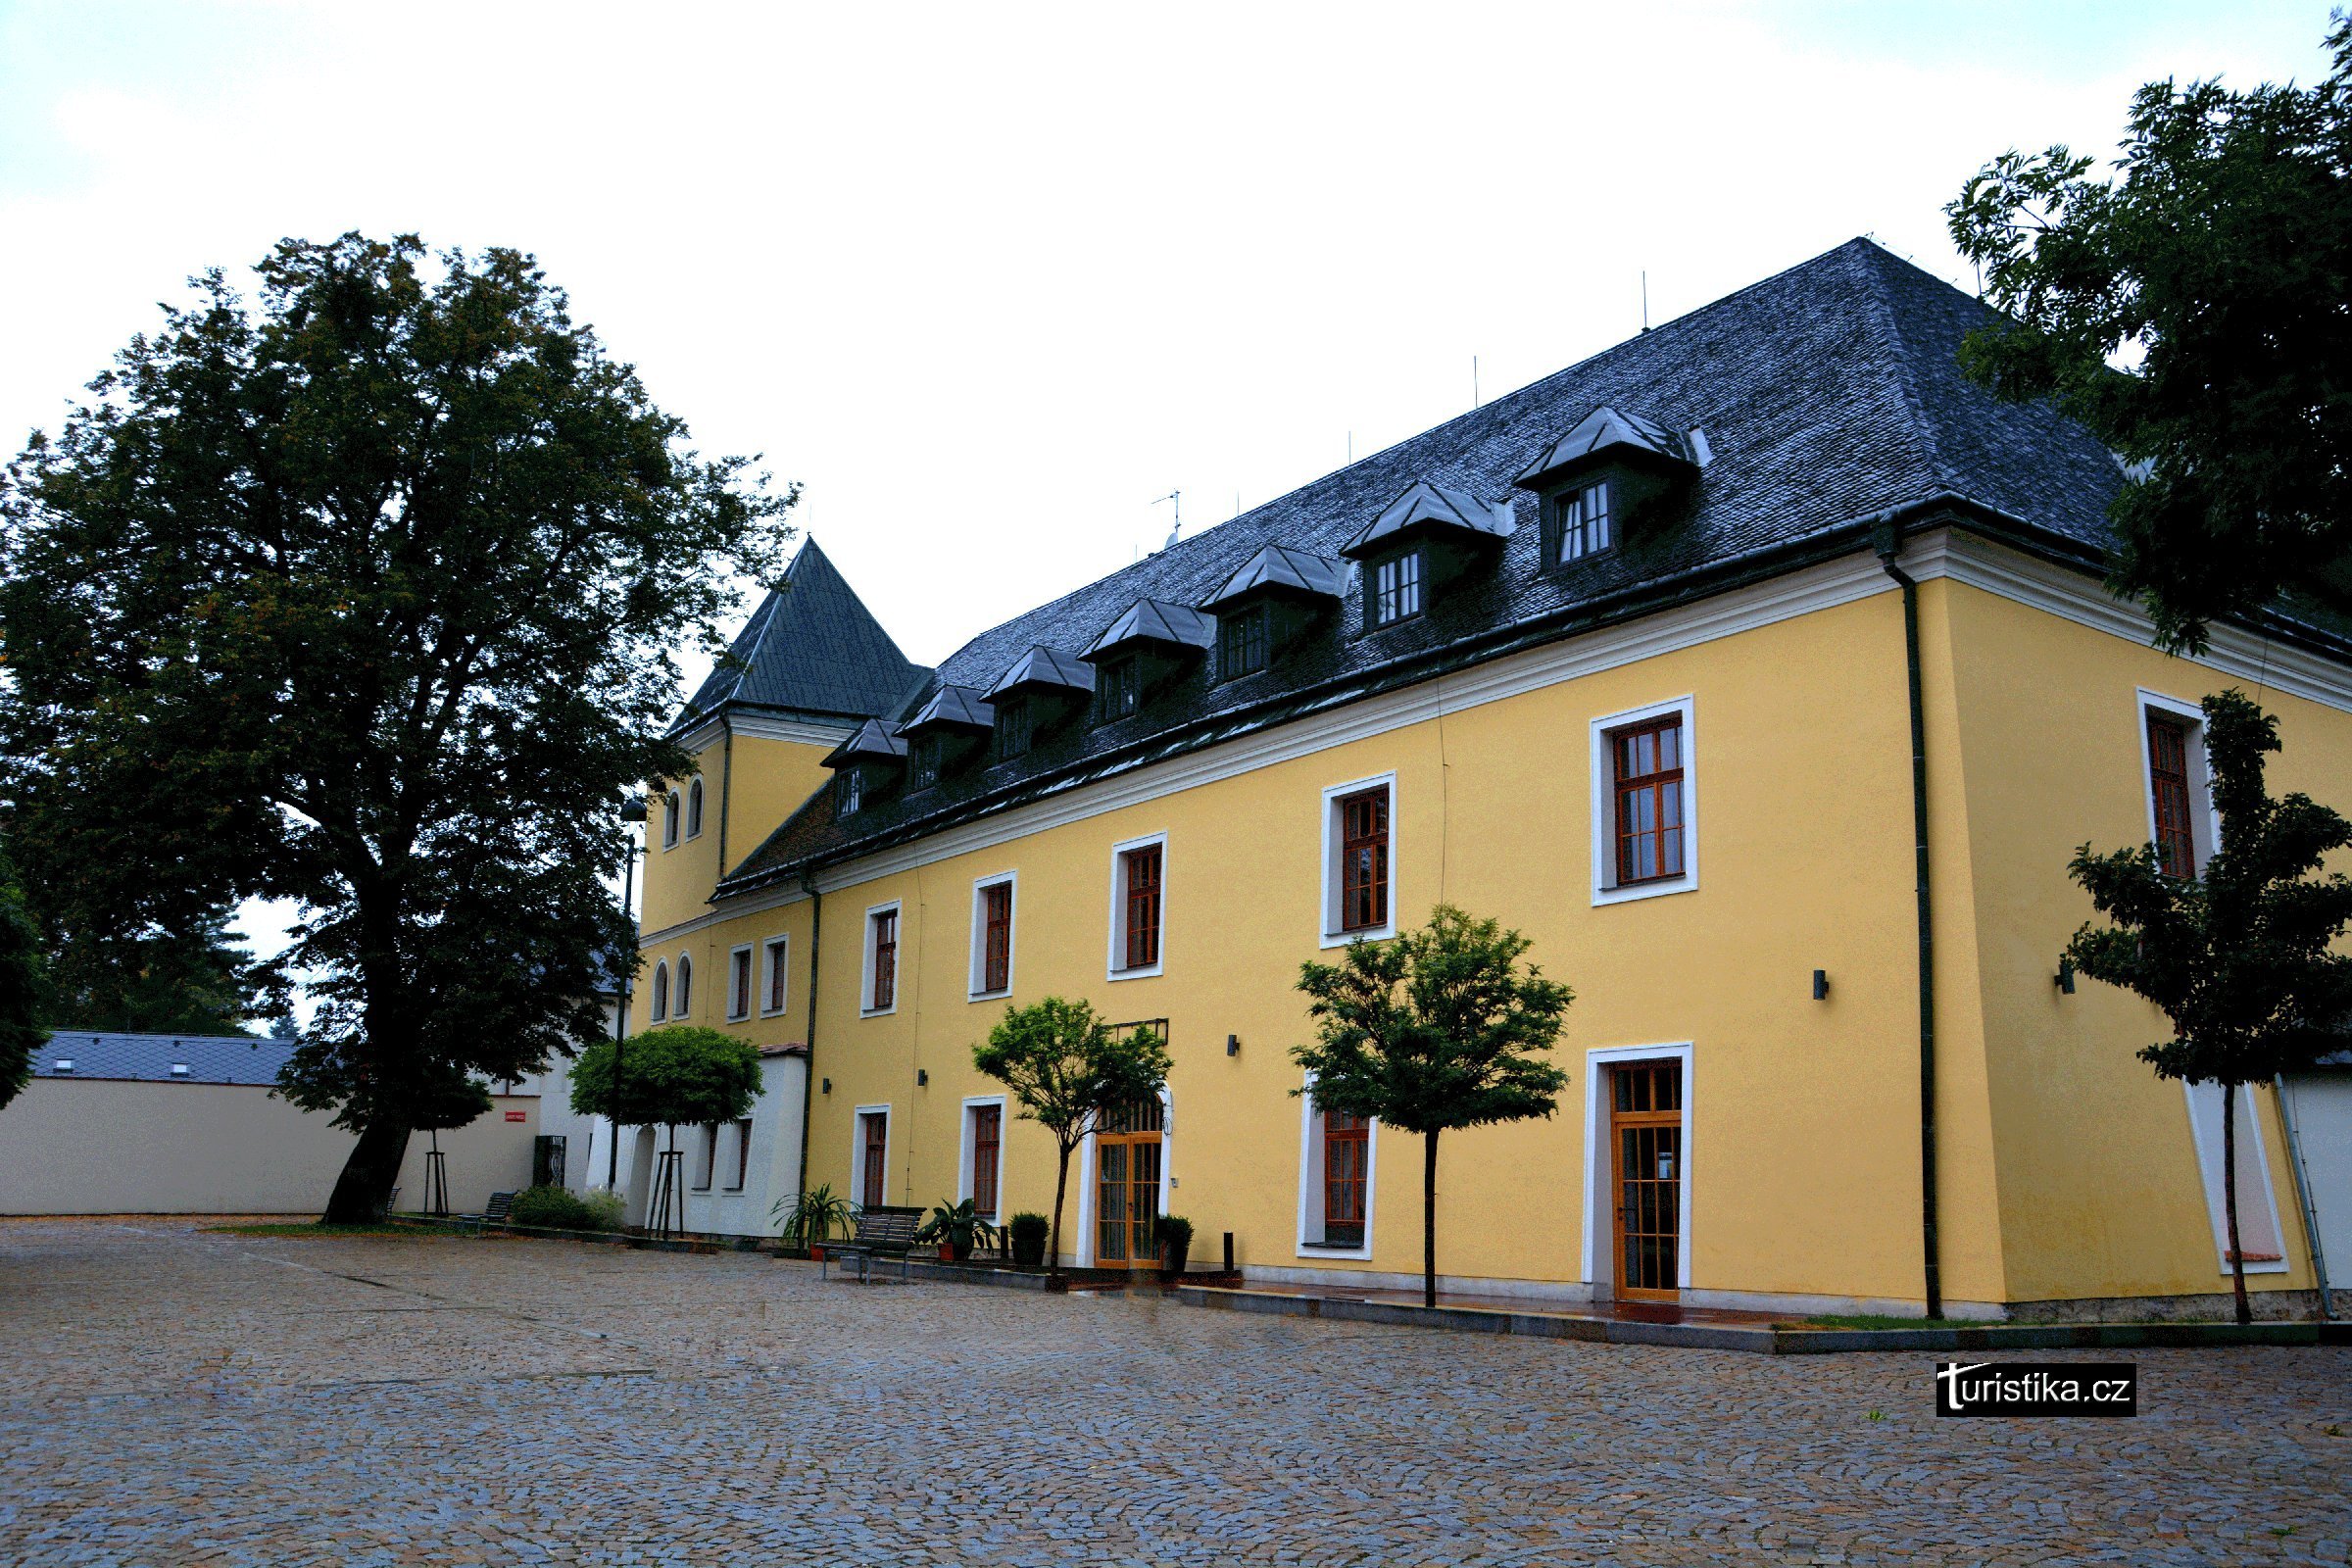 Ξενοδοχείο Chateau Velká Bystřice